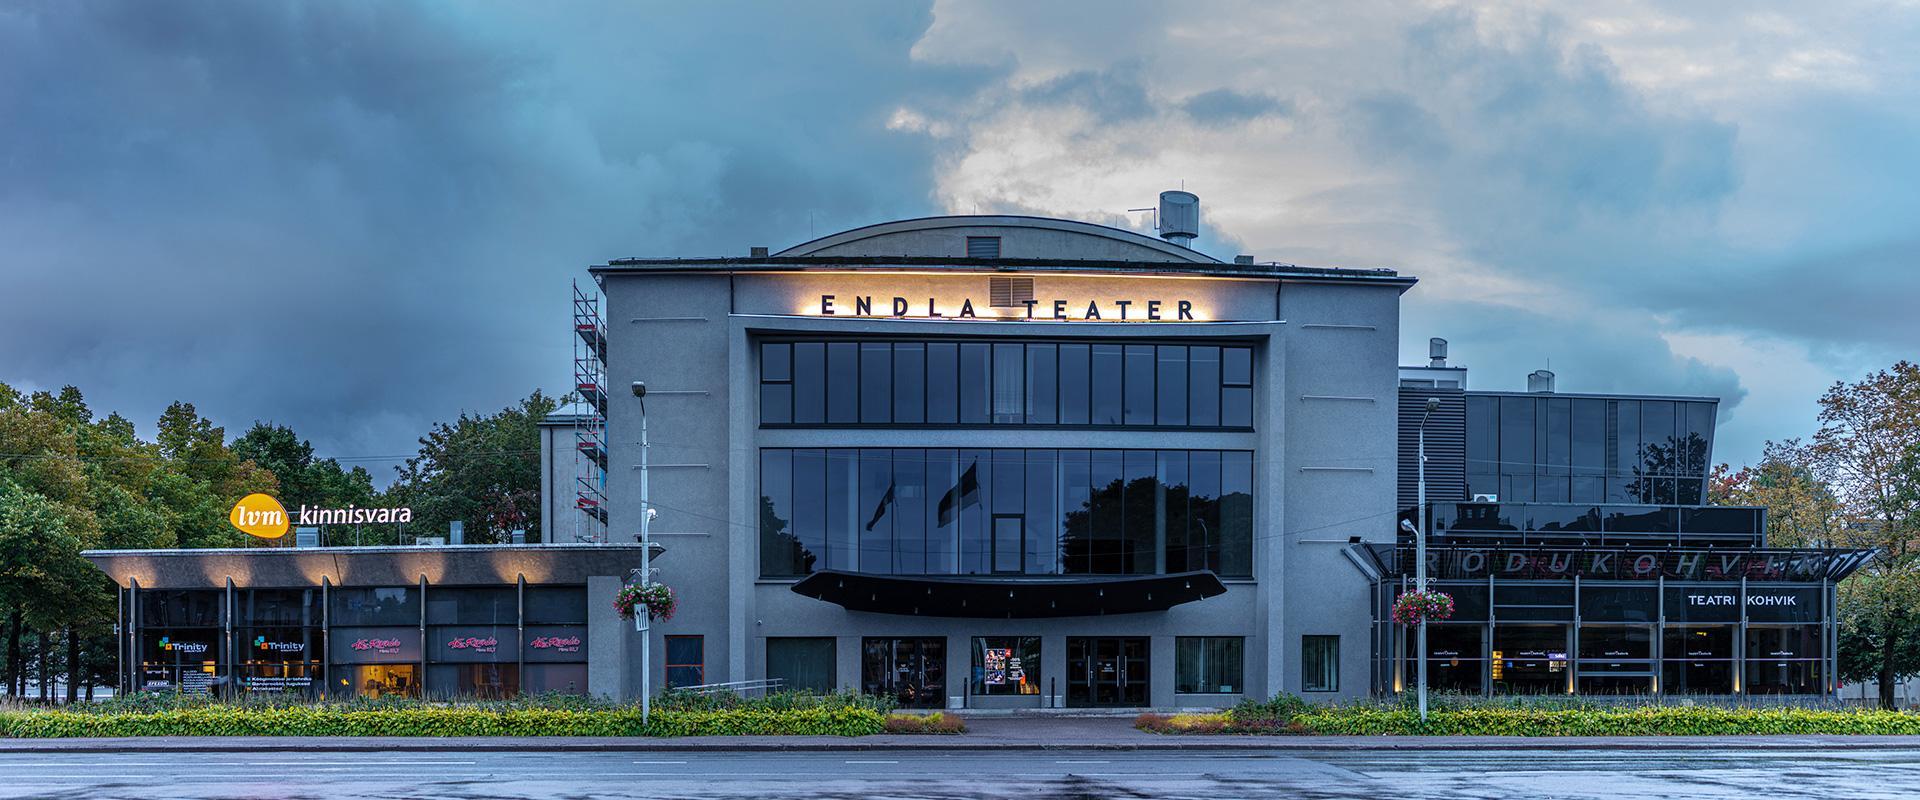 Endla Teater on Eesti vanuselt kolmas kutseline teater. 1911 avati pidulikult Rüütli platsi ääres uue suurejoonelise juugendstiilis teatrimaja uksed. 